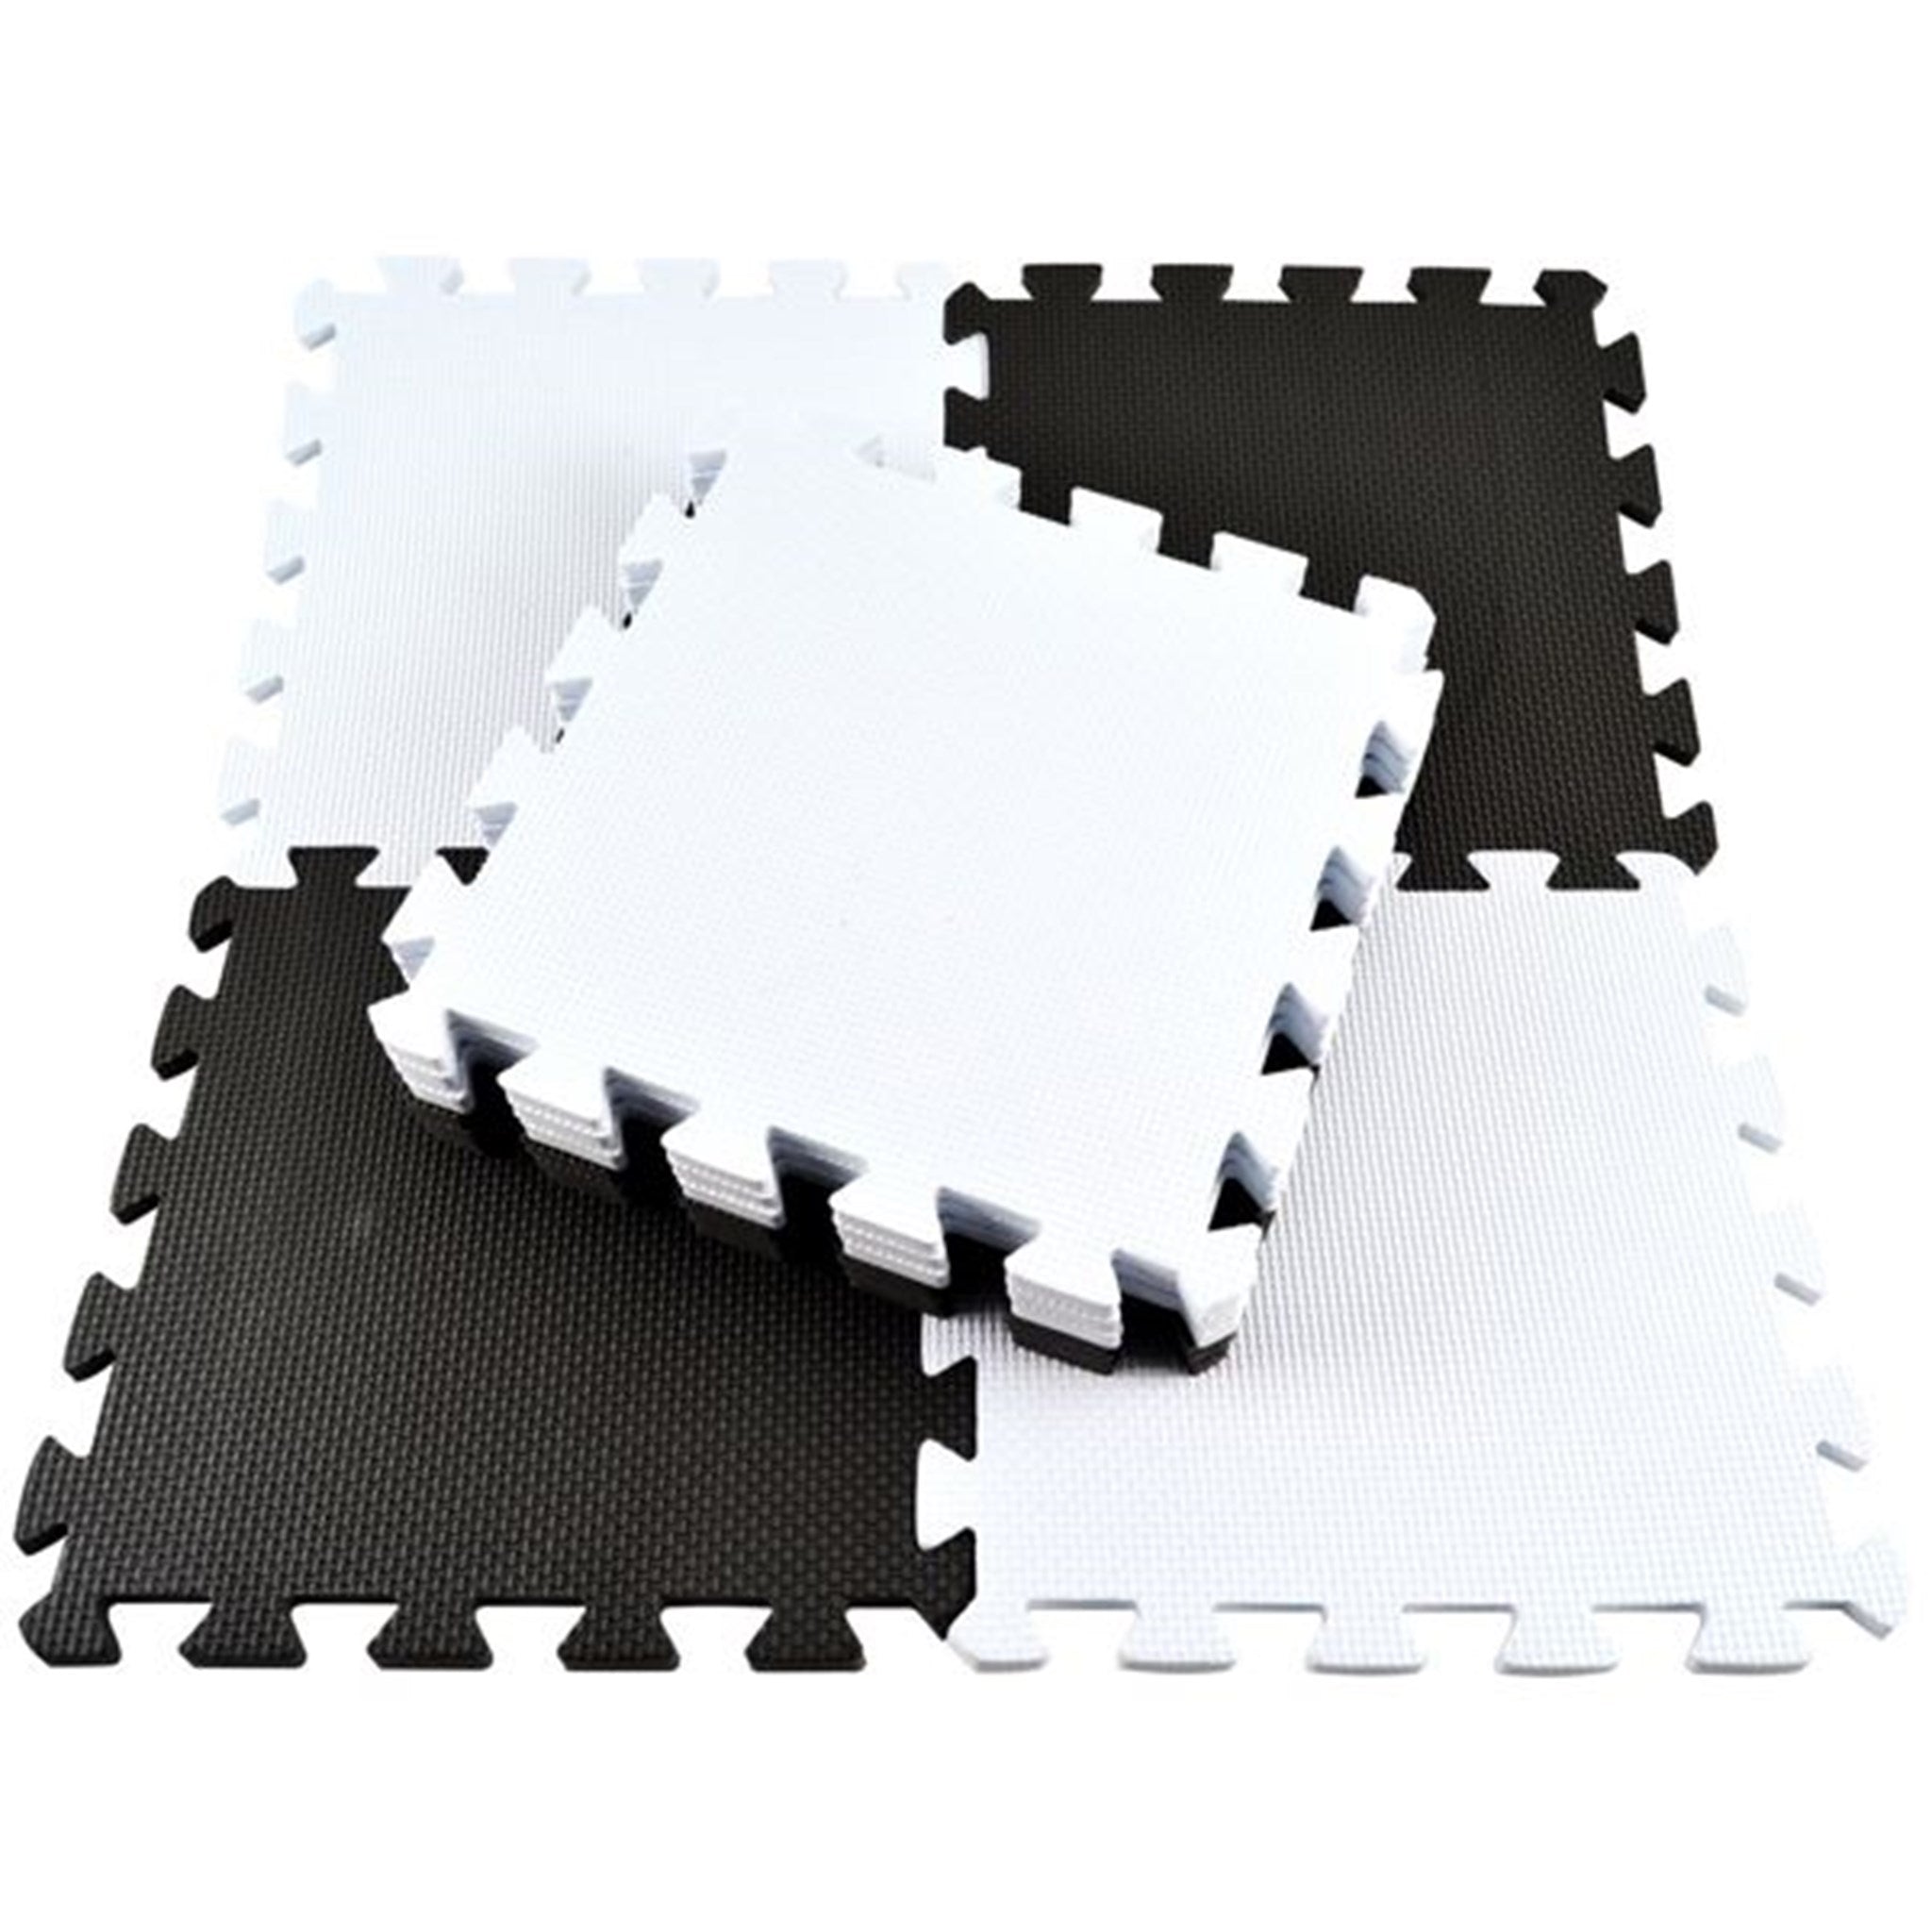 Magni Floor Mat Puzzle White/Black 10 Pieces